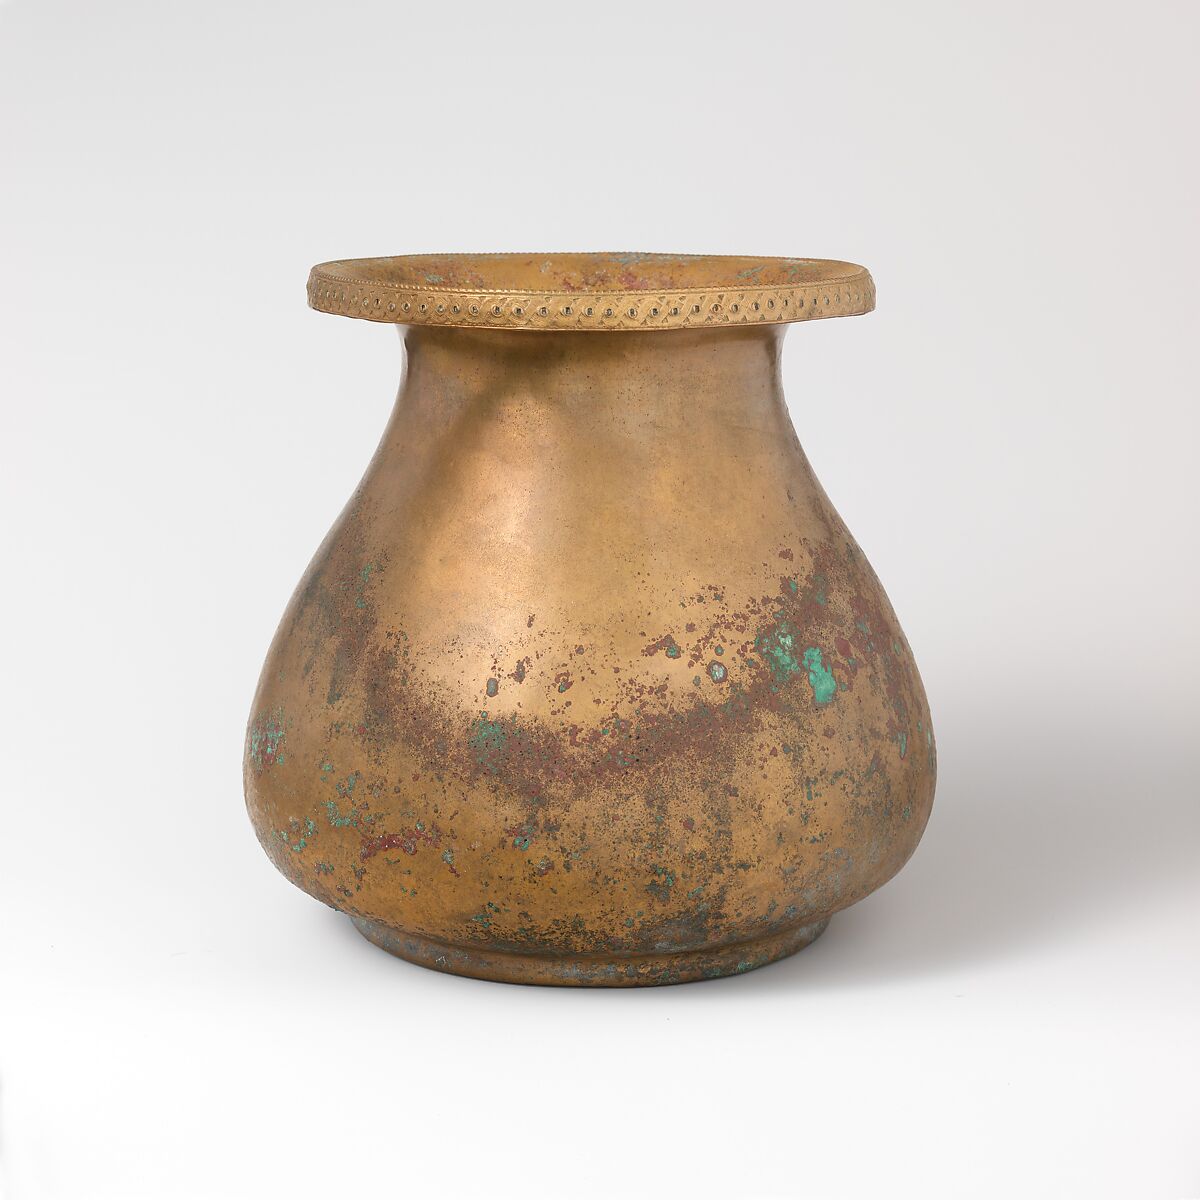 Bronze jug, Bronze, Roman 